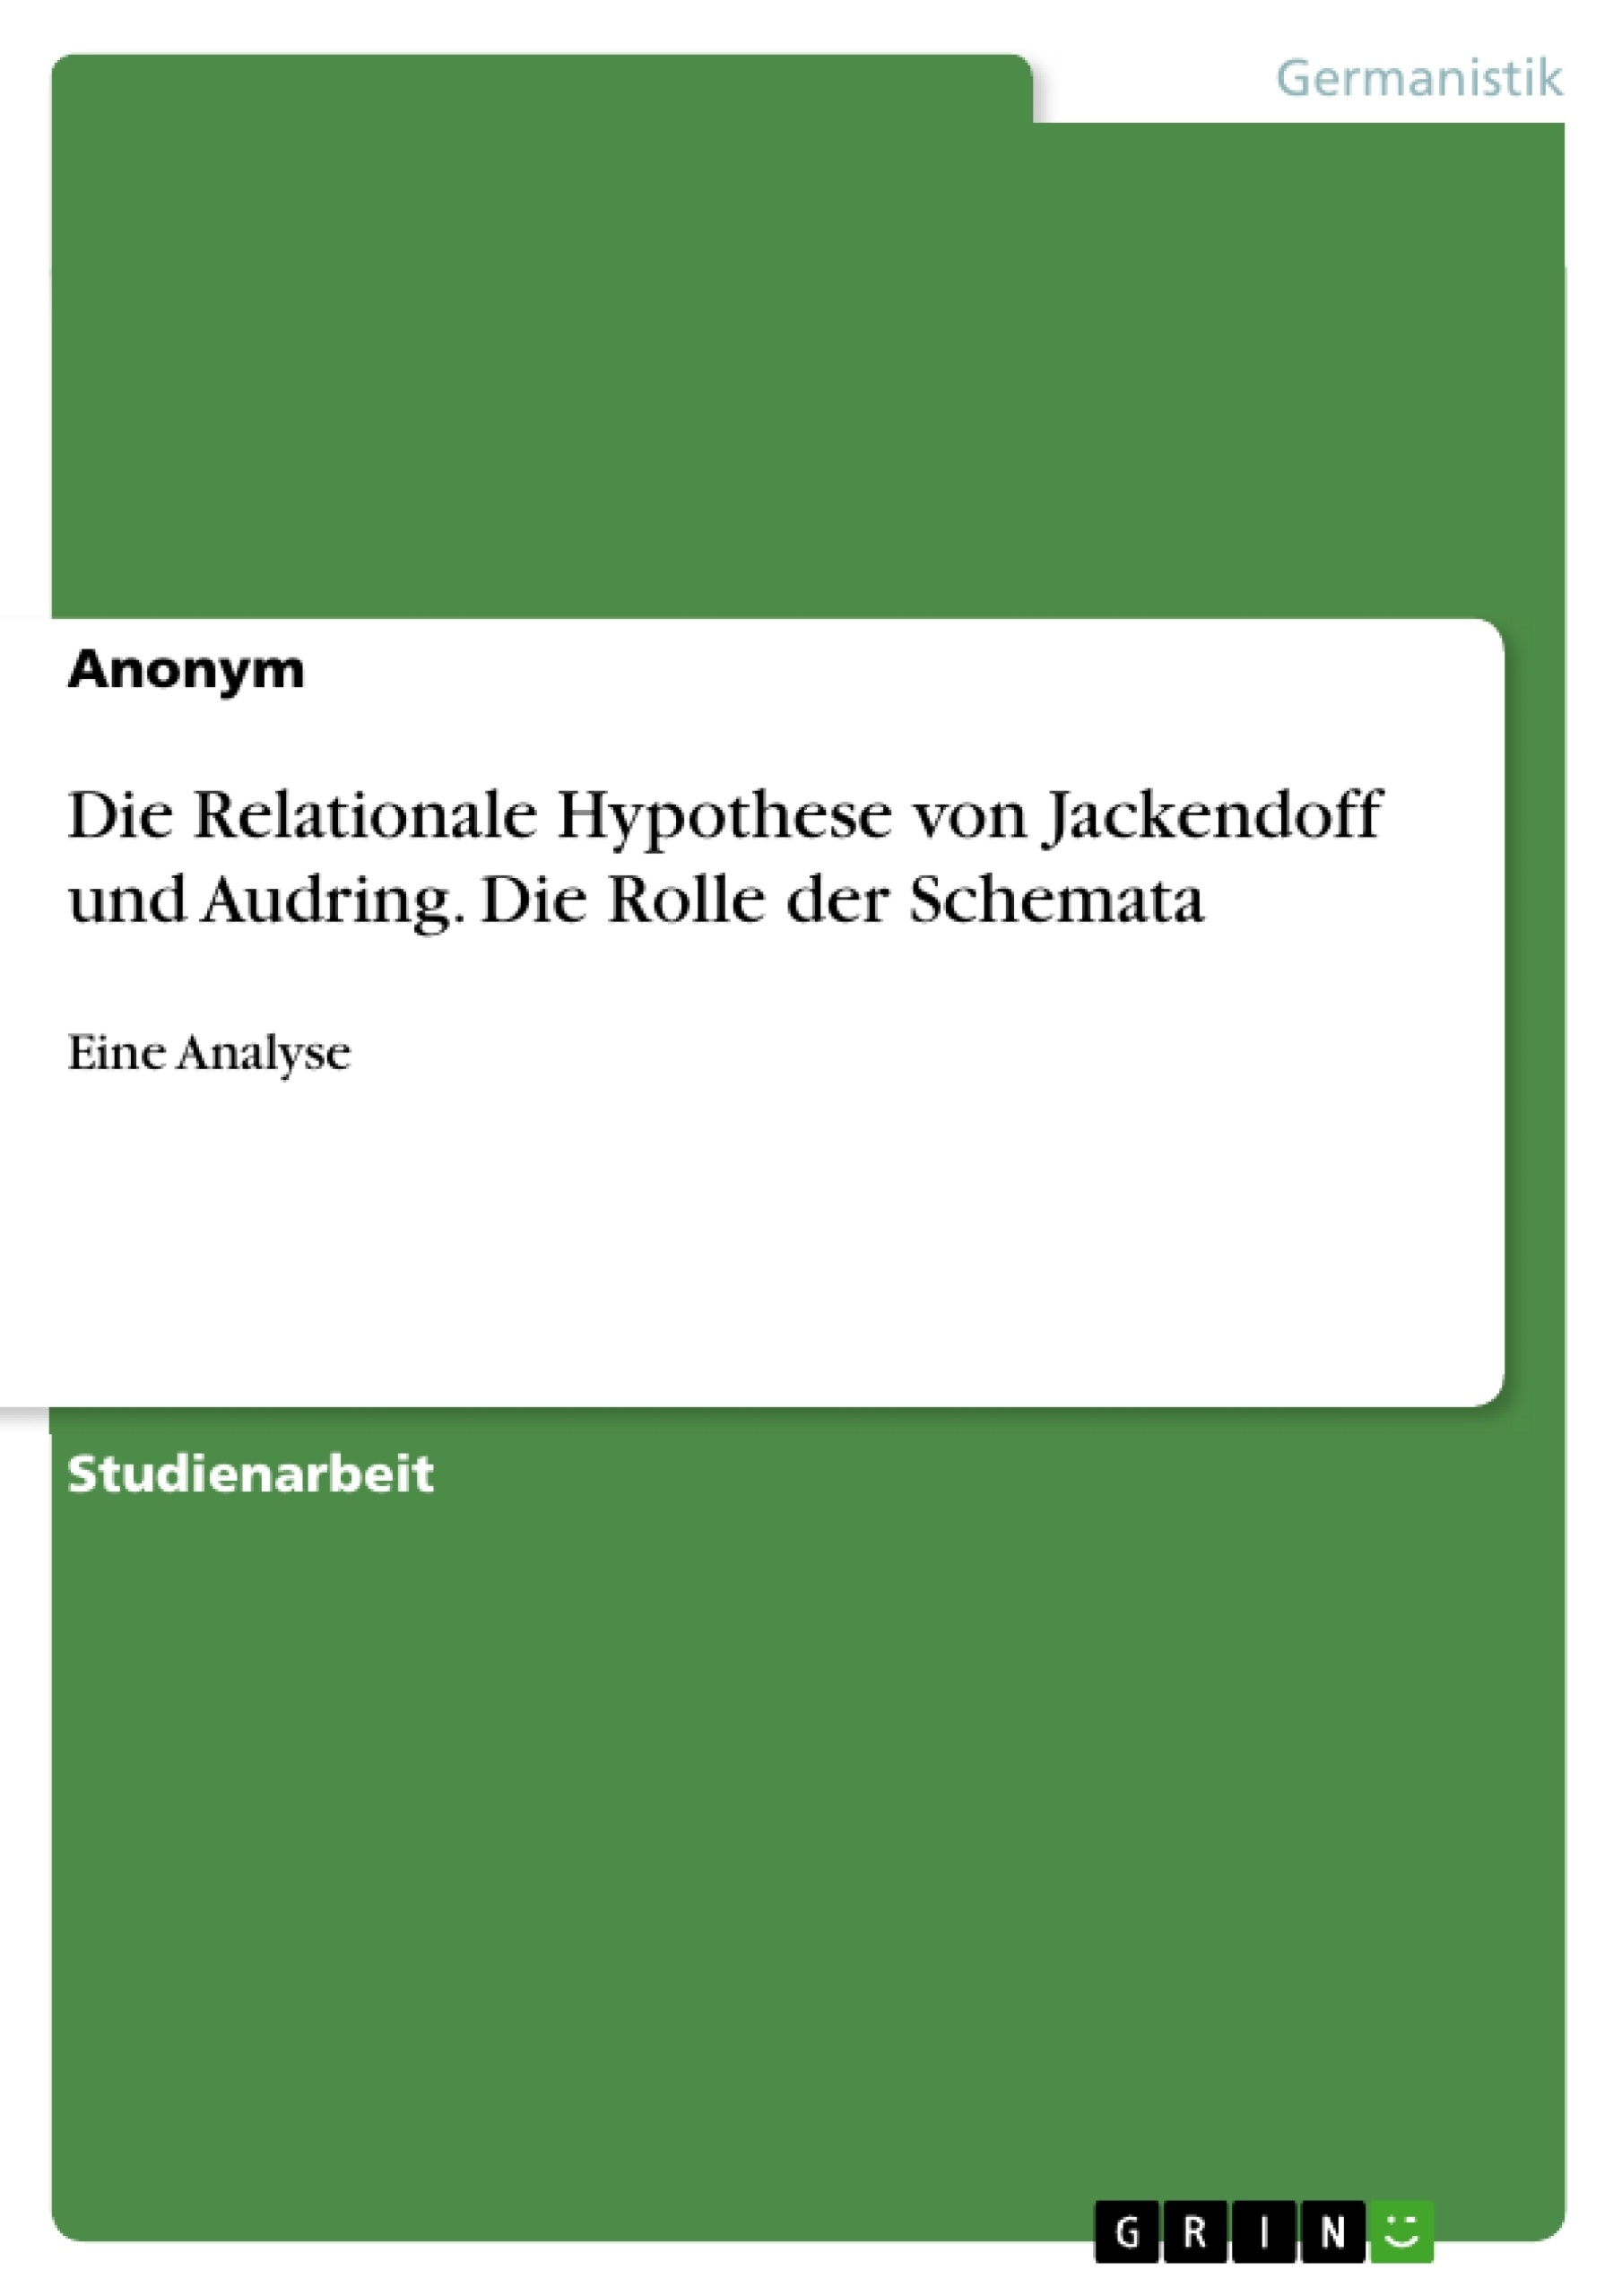 Title: Die Relationale Hypothese von Jackendoff und Audring. Die Rolle der Schemata